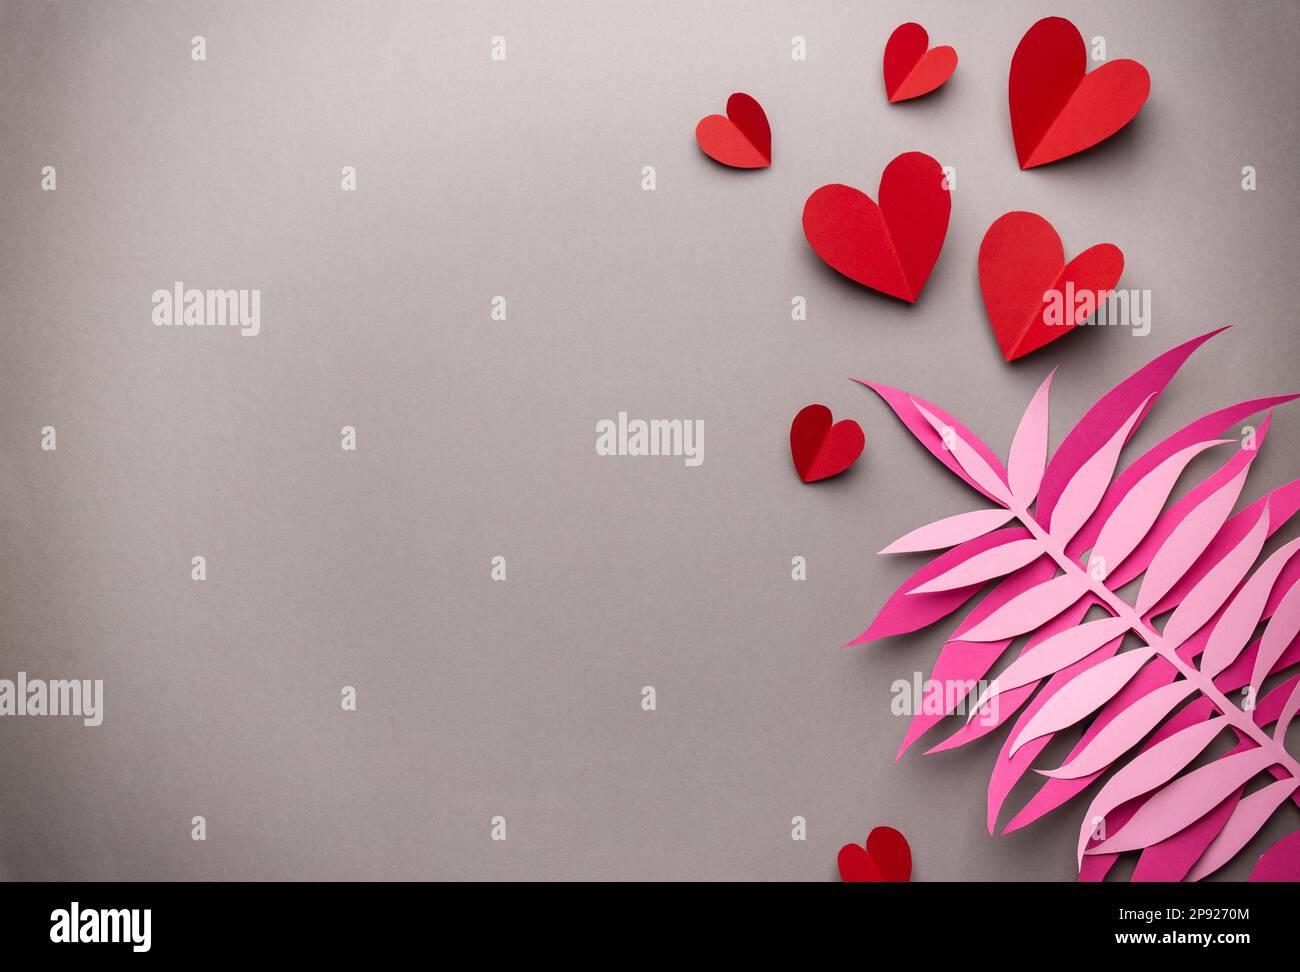 Flach liegender romantischer Valentinstag Hintergrund, Papierkunst Dekoration. Papierherzen und tropische exotische Blätter auf neutralem grauen Hintergrund. Valentinstag Stockfoto